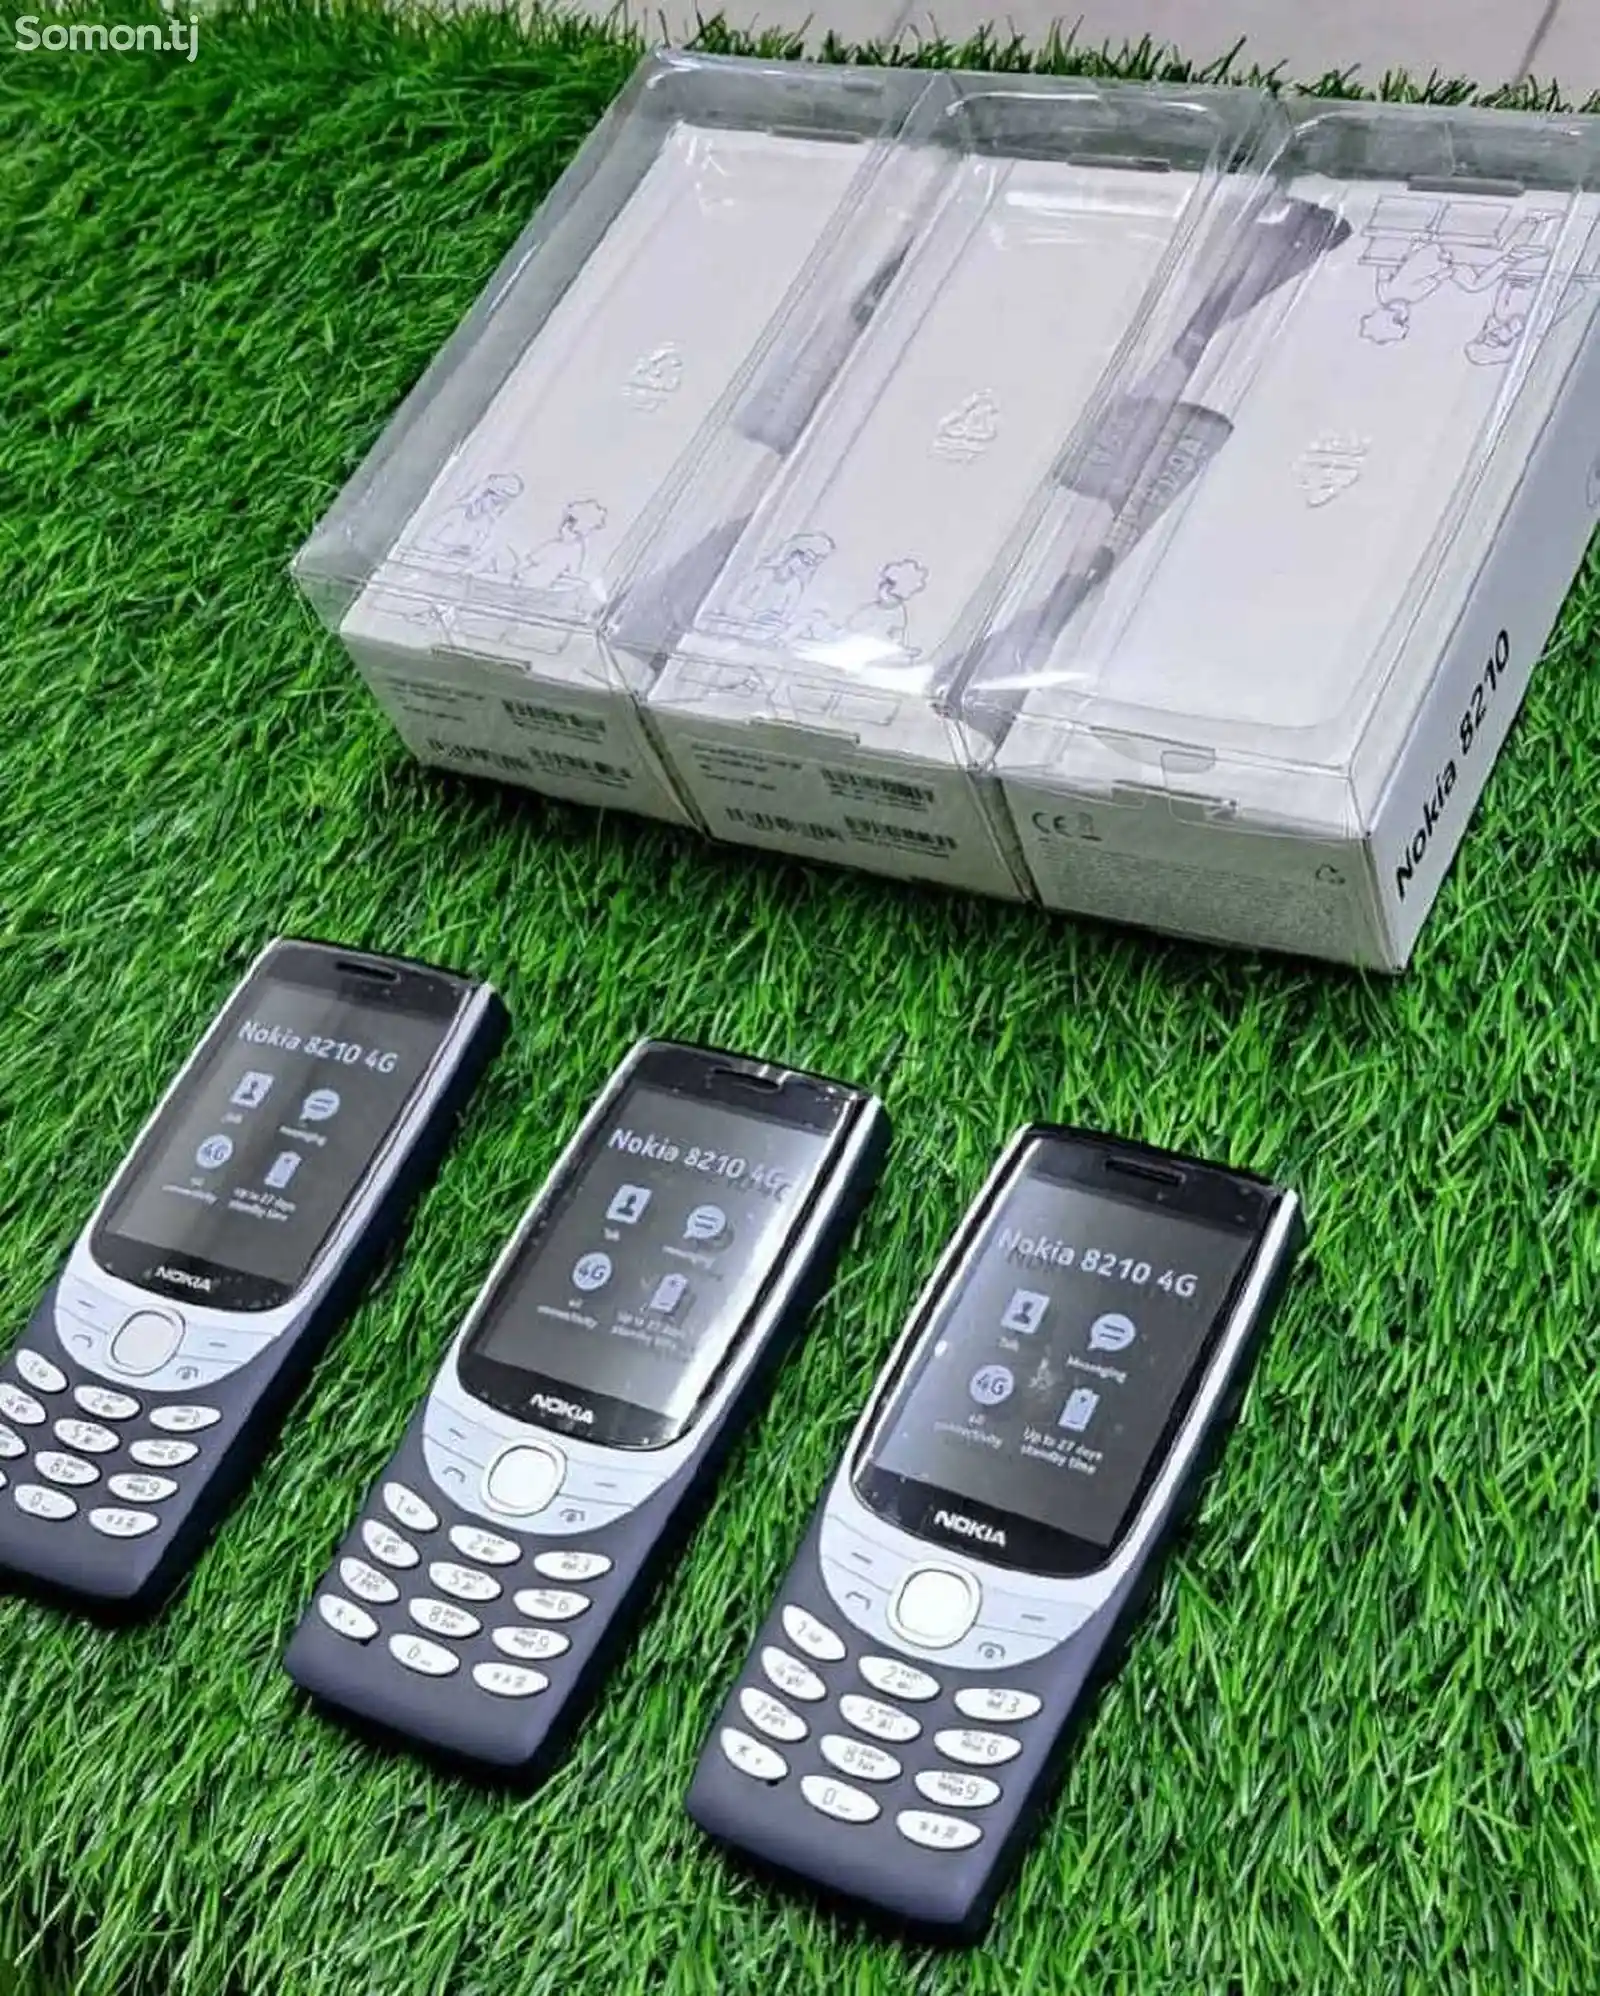 Nokia 8210-6